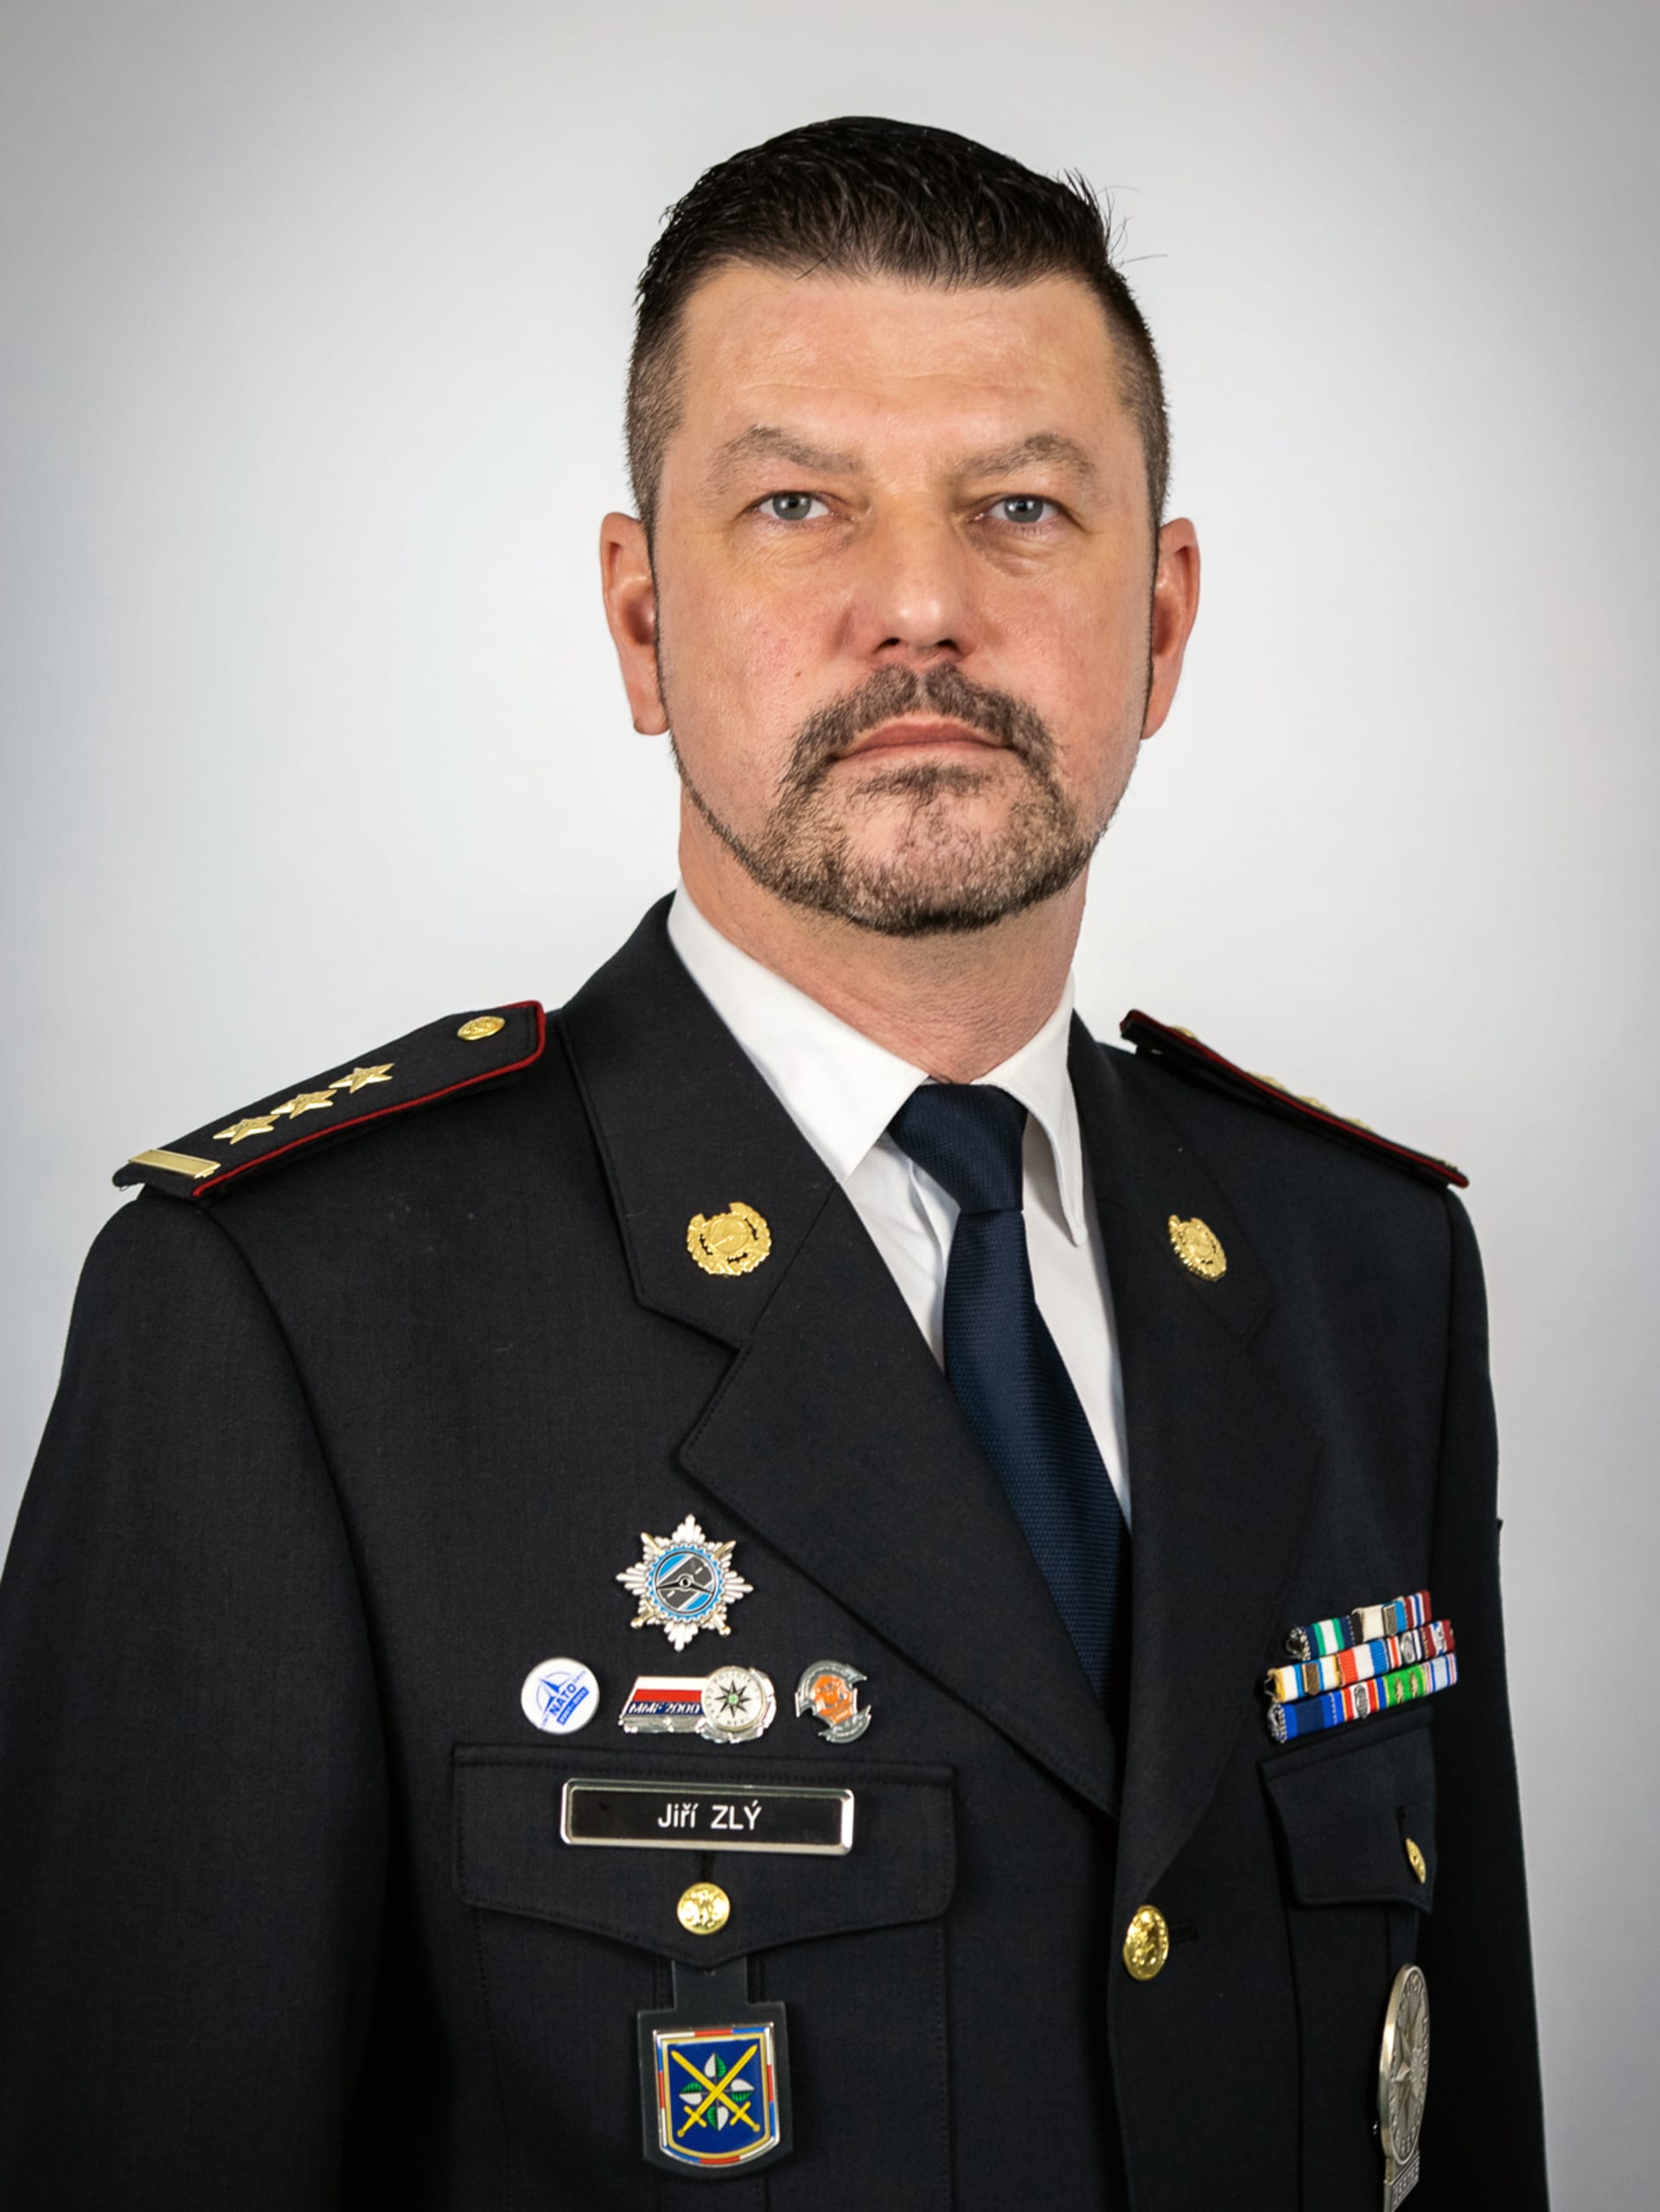 Ředitel Dopravní policie ČR, Jiří Zlý